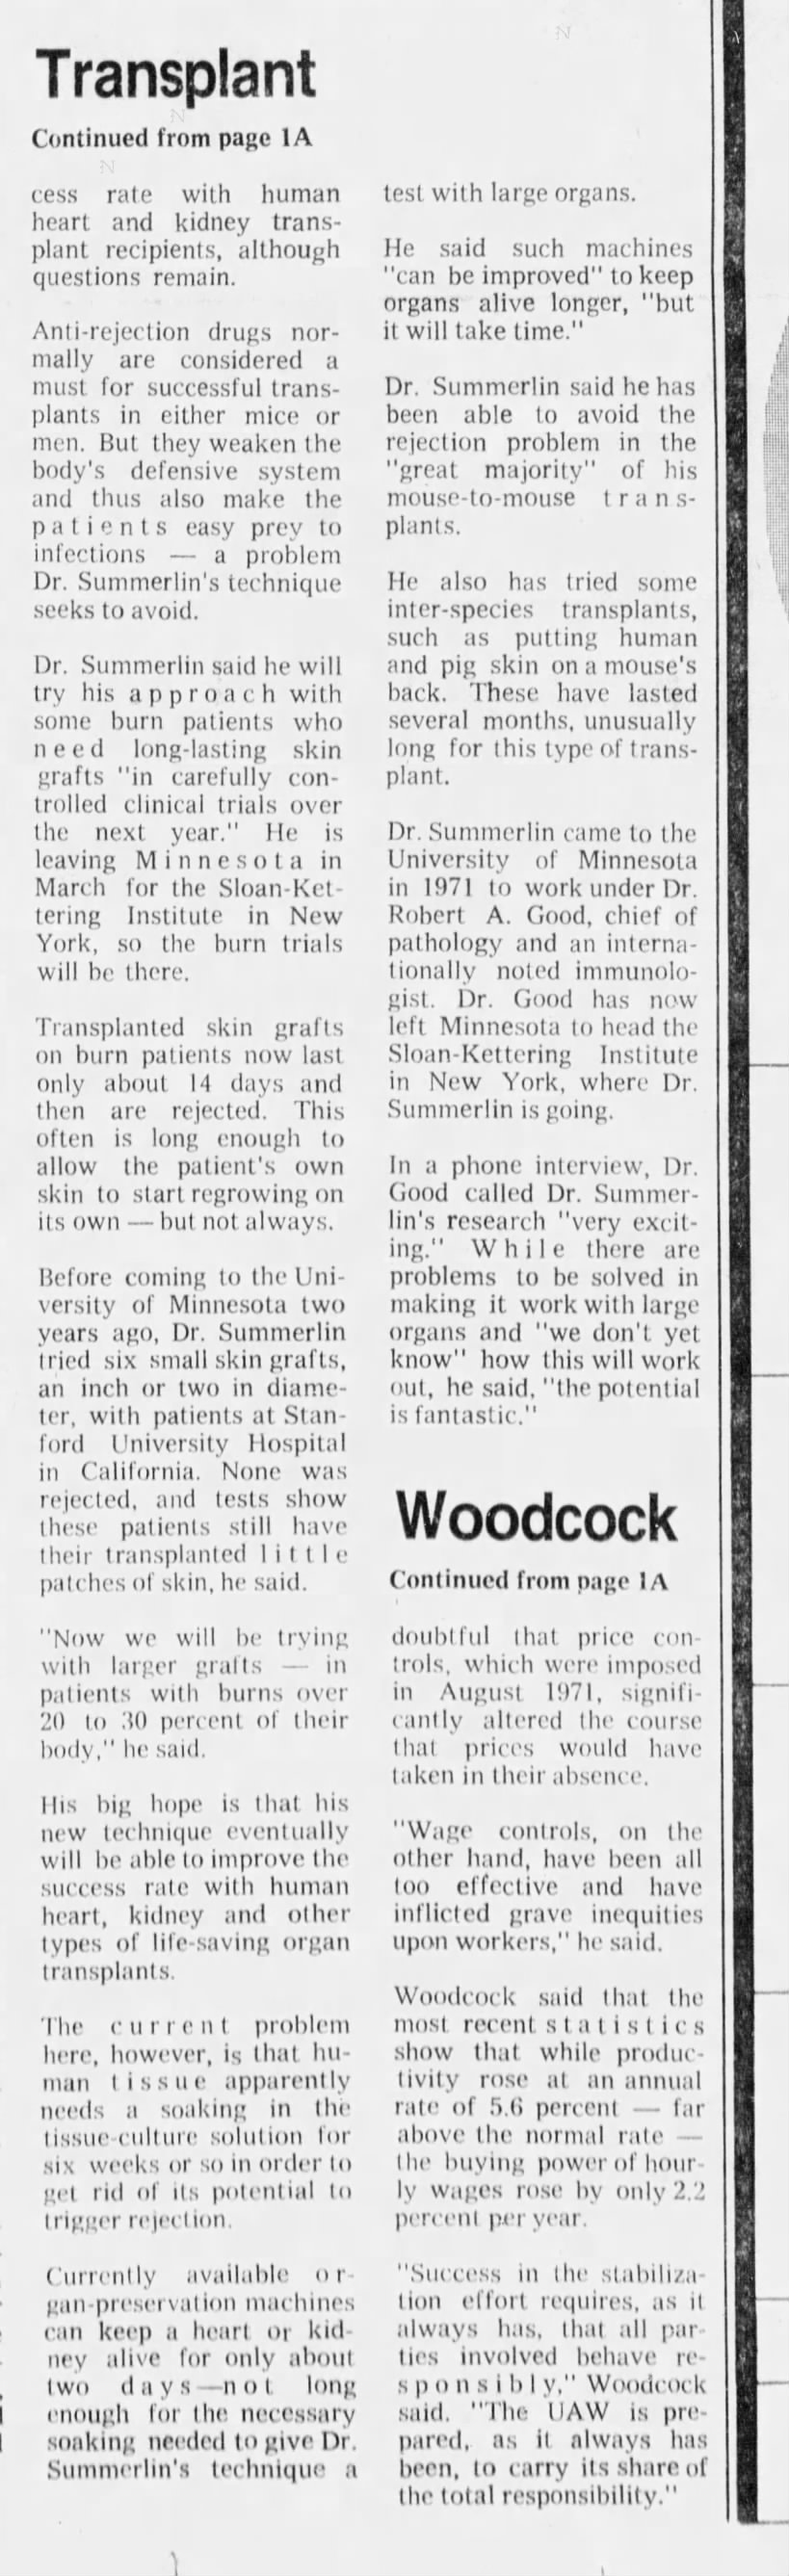 Star Tribune - Jan 17 1973 - page 3 - William T. Summerlin